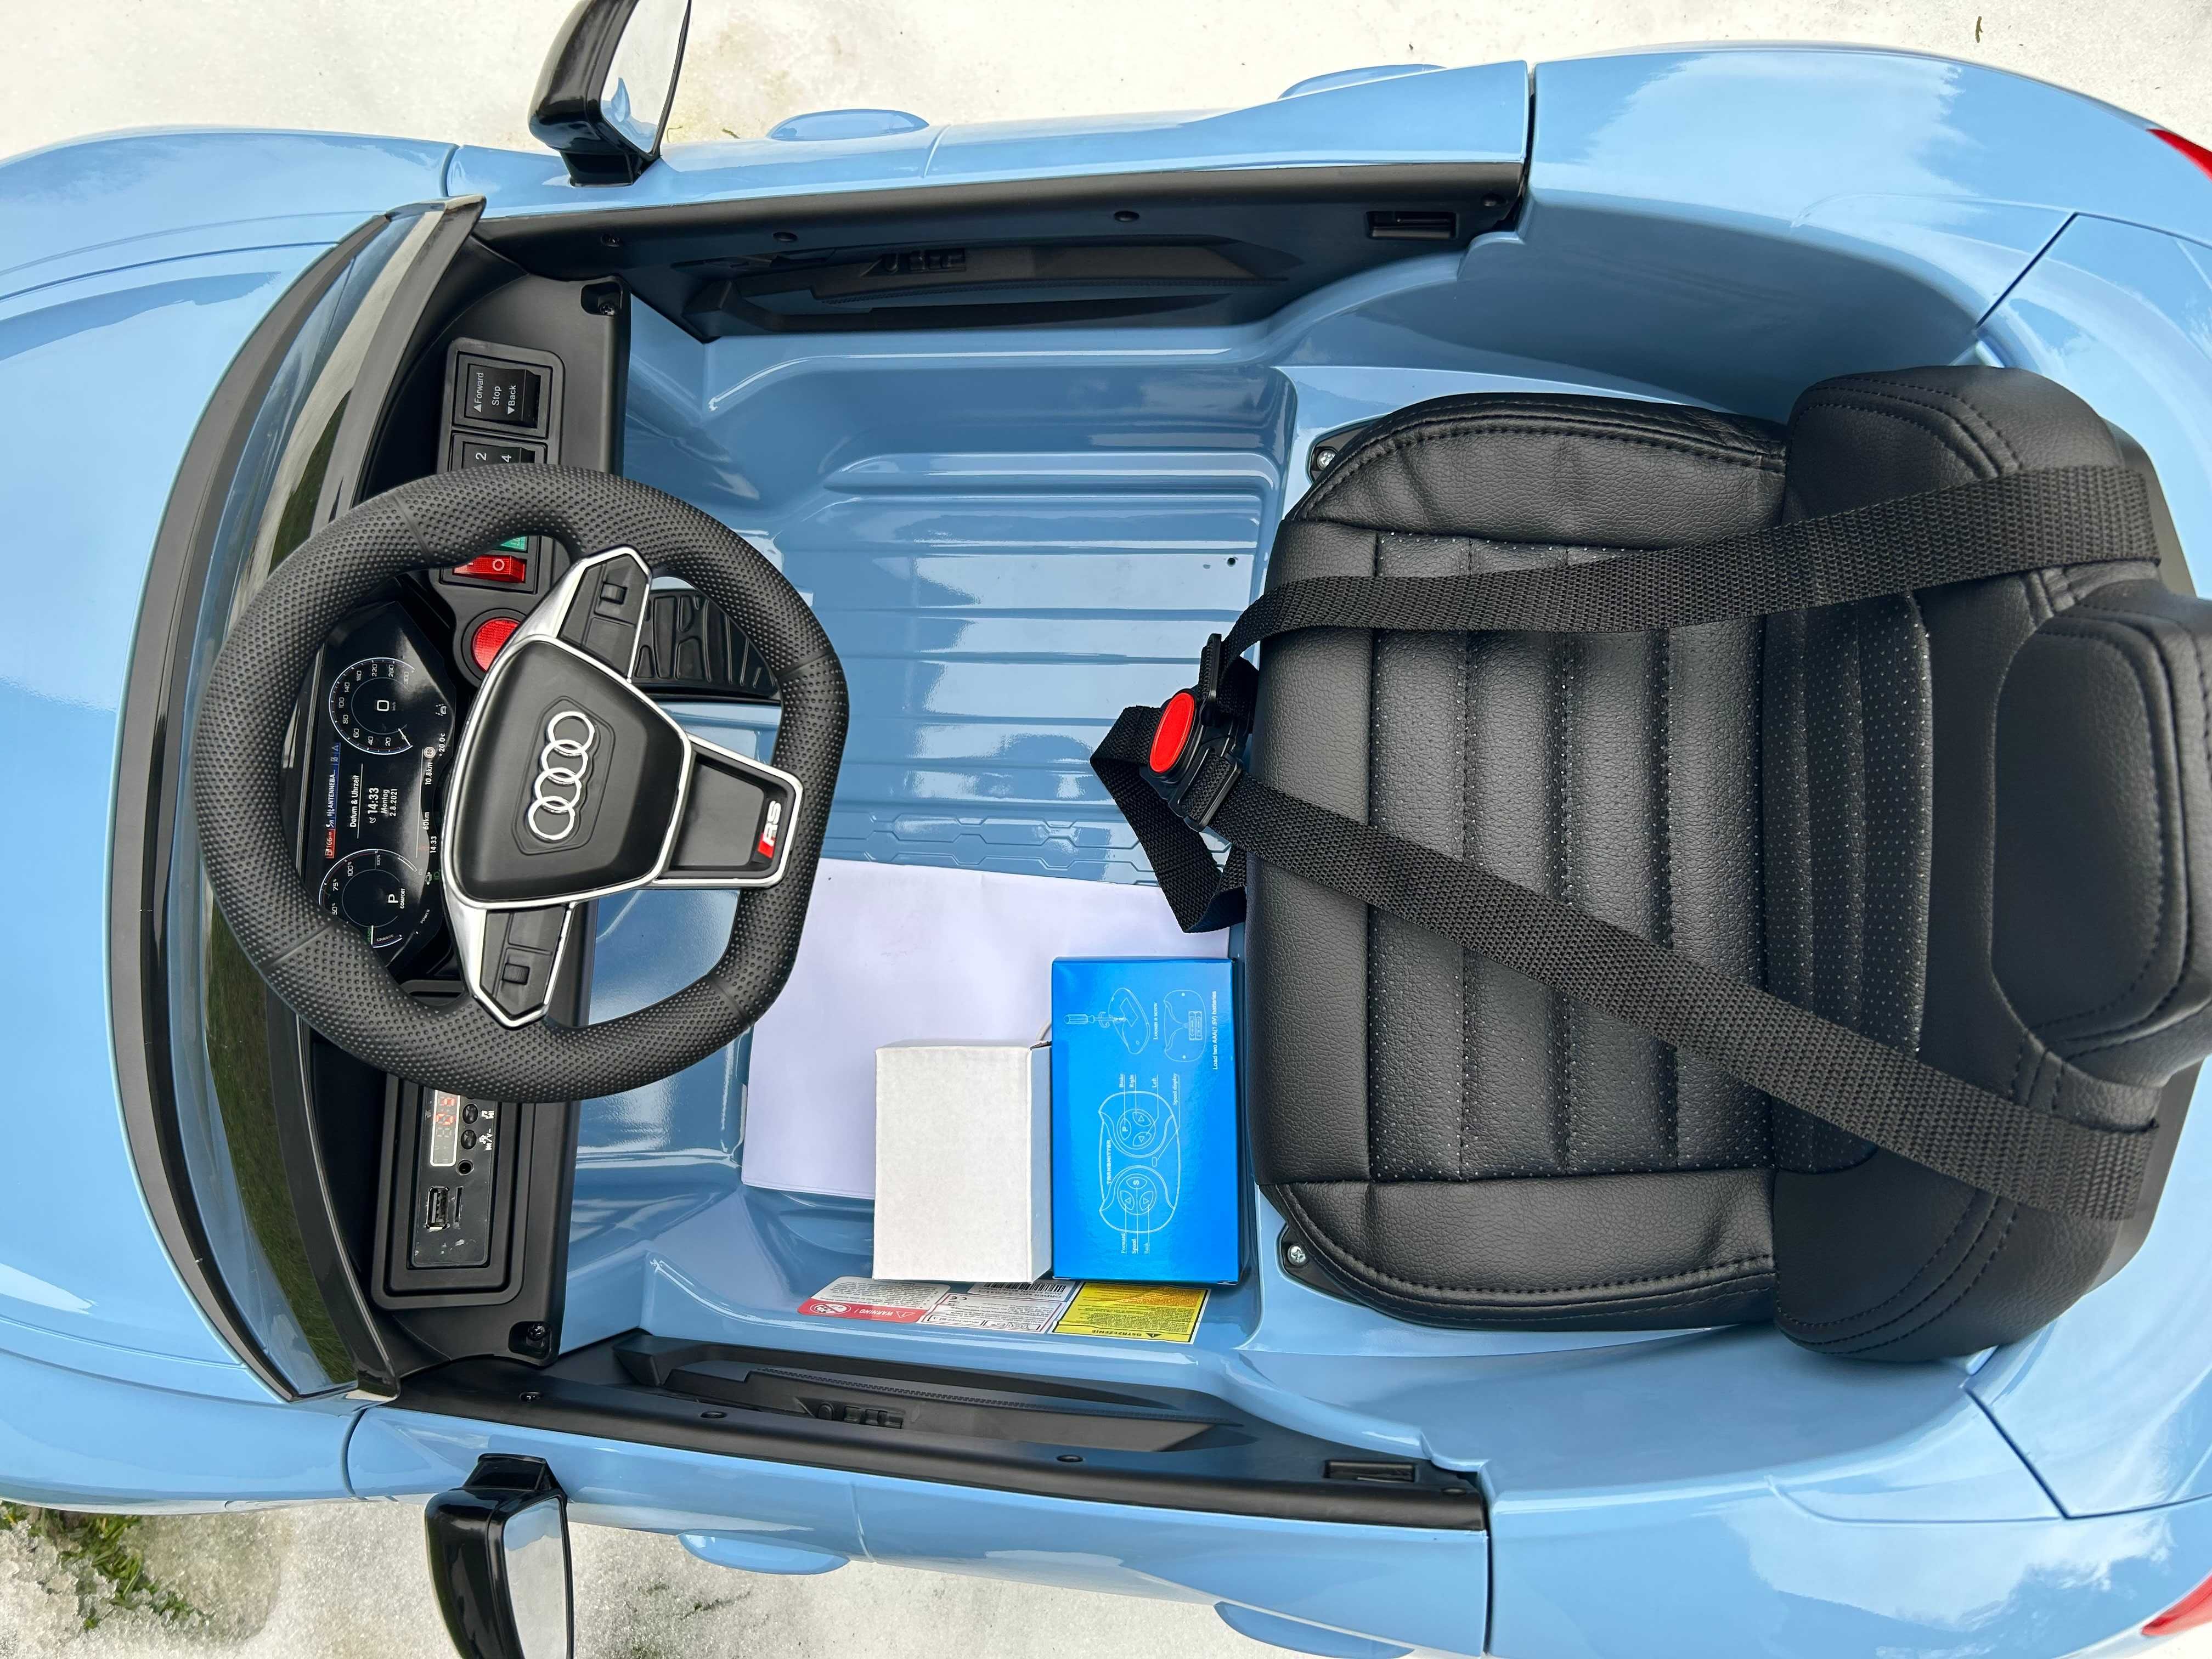 Auta na akumulator 4x4 AUDI RS E TRON GT autko pojazd elektryczny